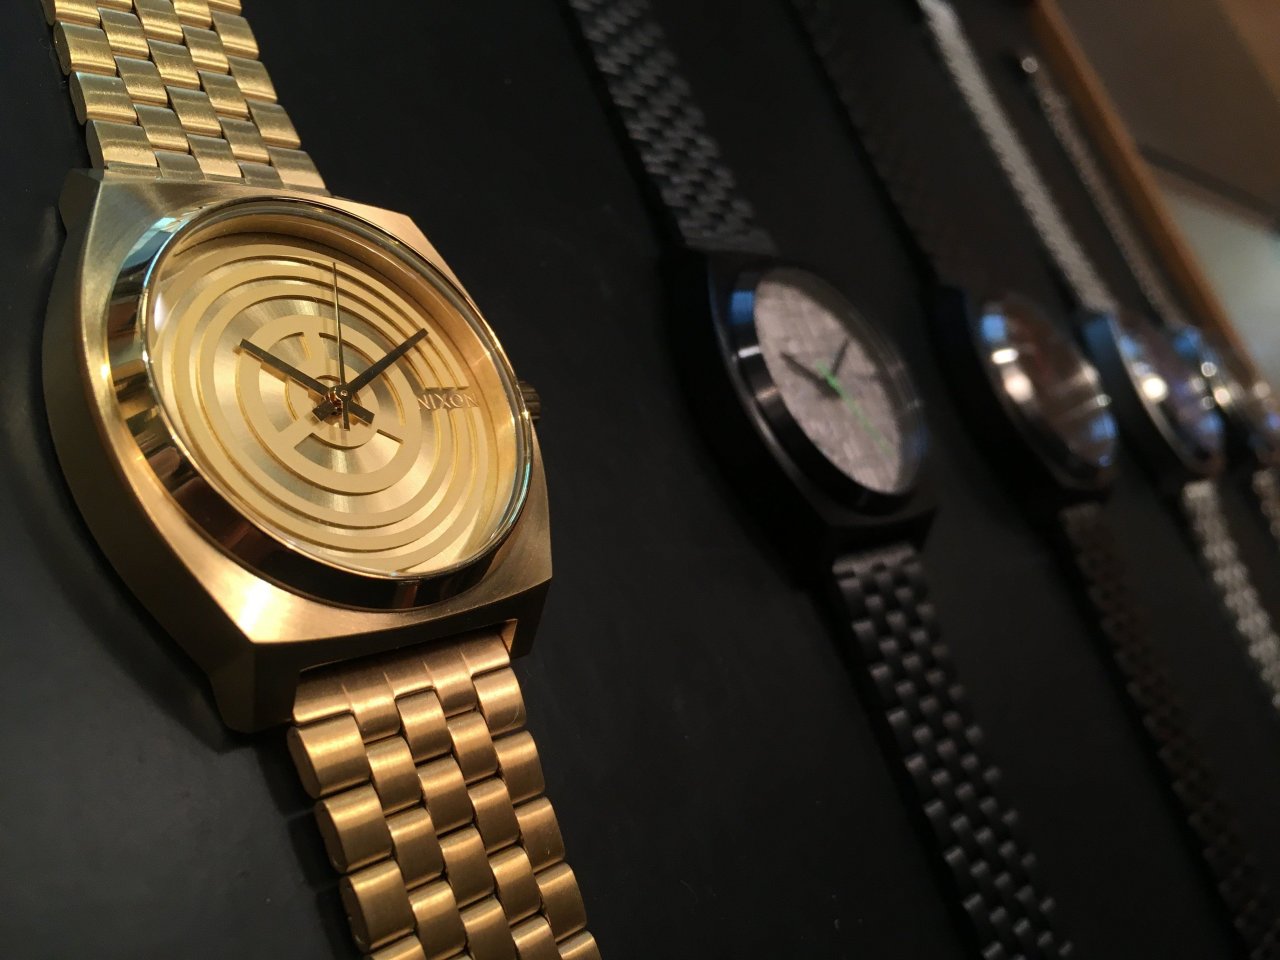 Une superbe collection de montres Star Wars chez Nixon #2